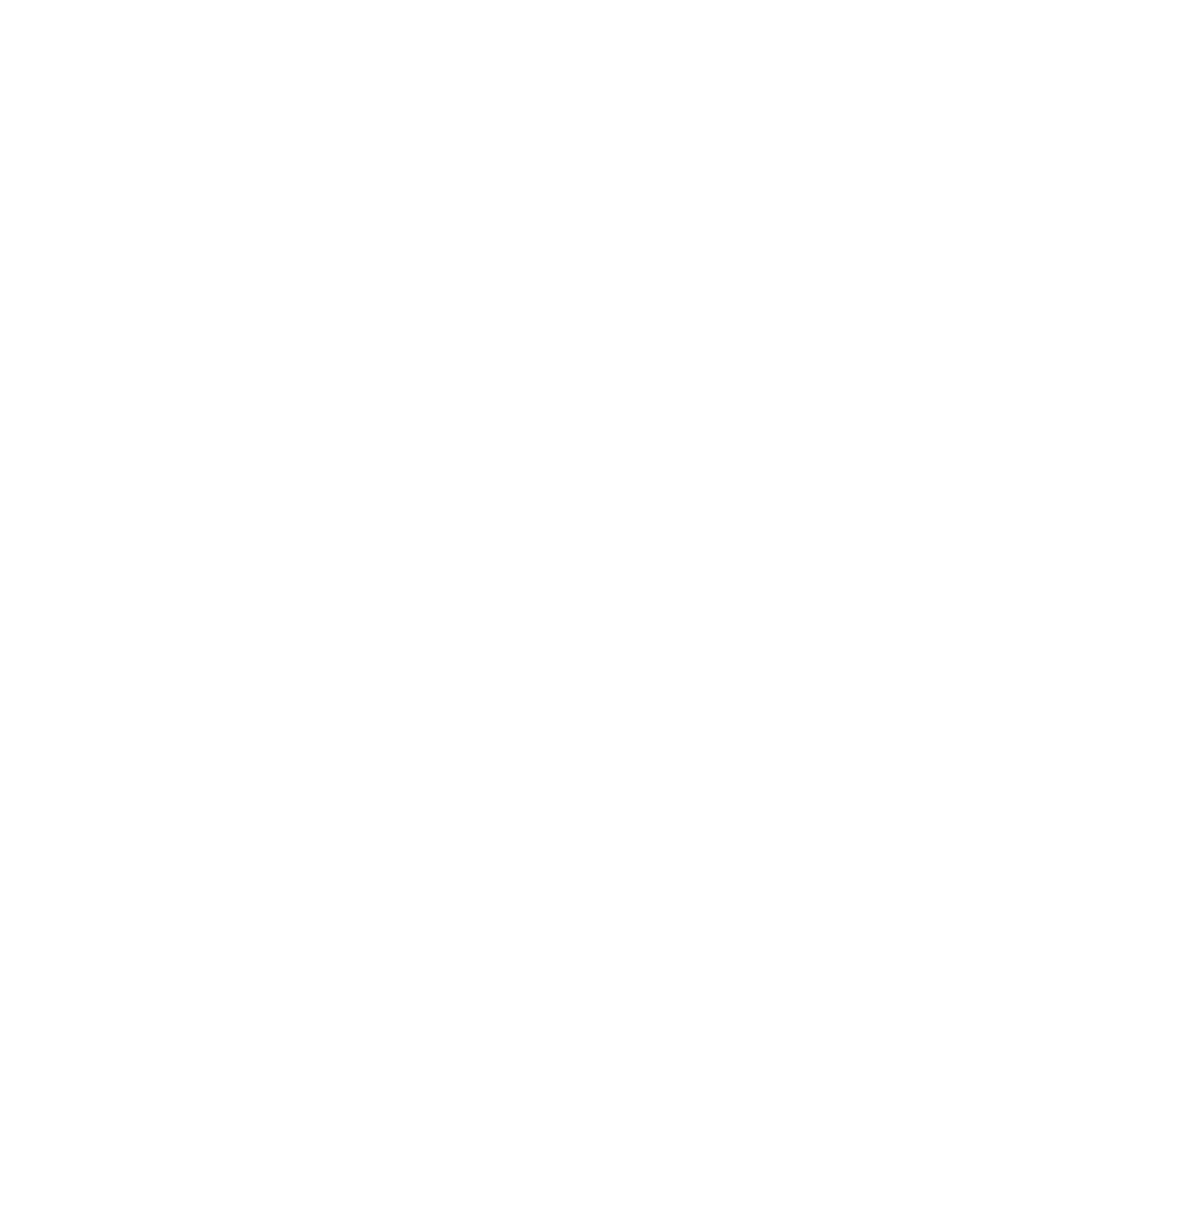 Hall of Fame Publishing Prisets logotyp som är cirkelformad med texten längs kanterna